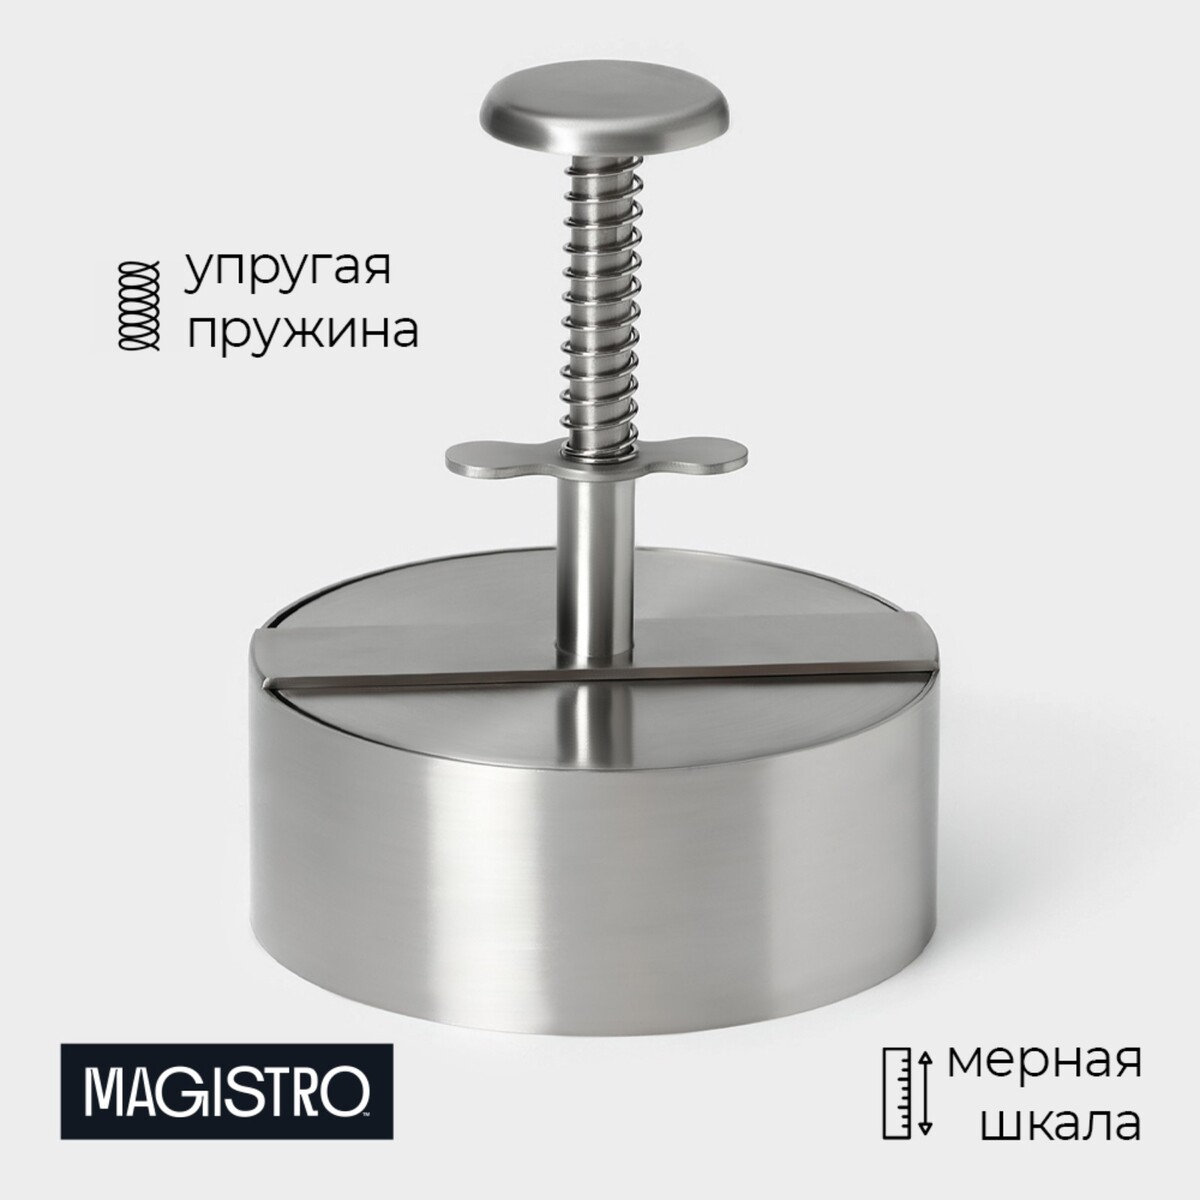 Пресс для бургеров magistro steel, 14×11.5 см, 304 сталь пресс для чеснока magistro volt нержавеющая сталь серебряный